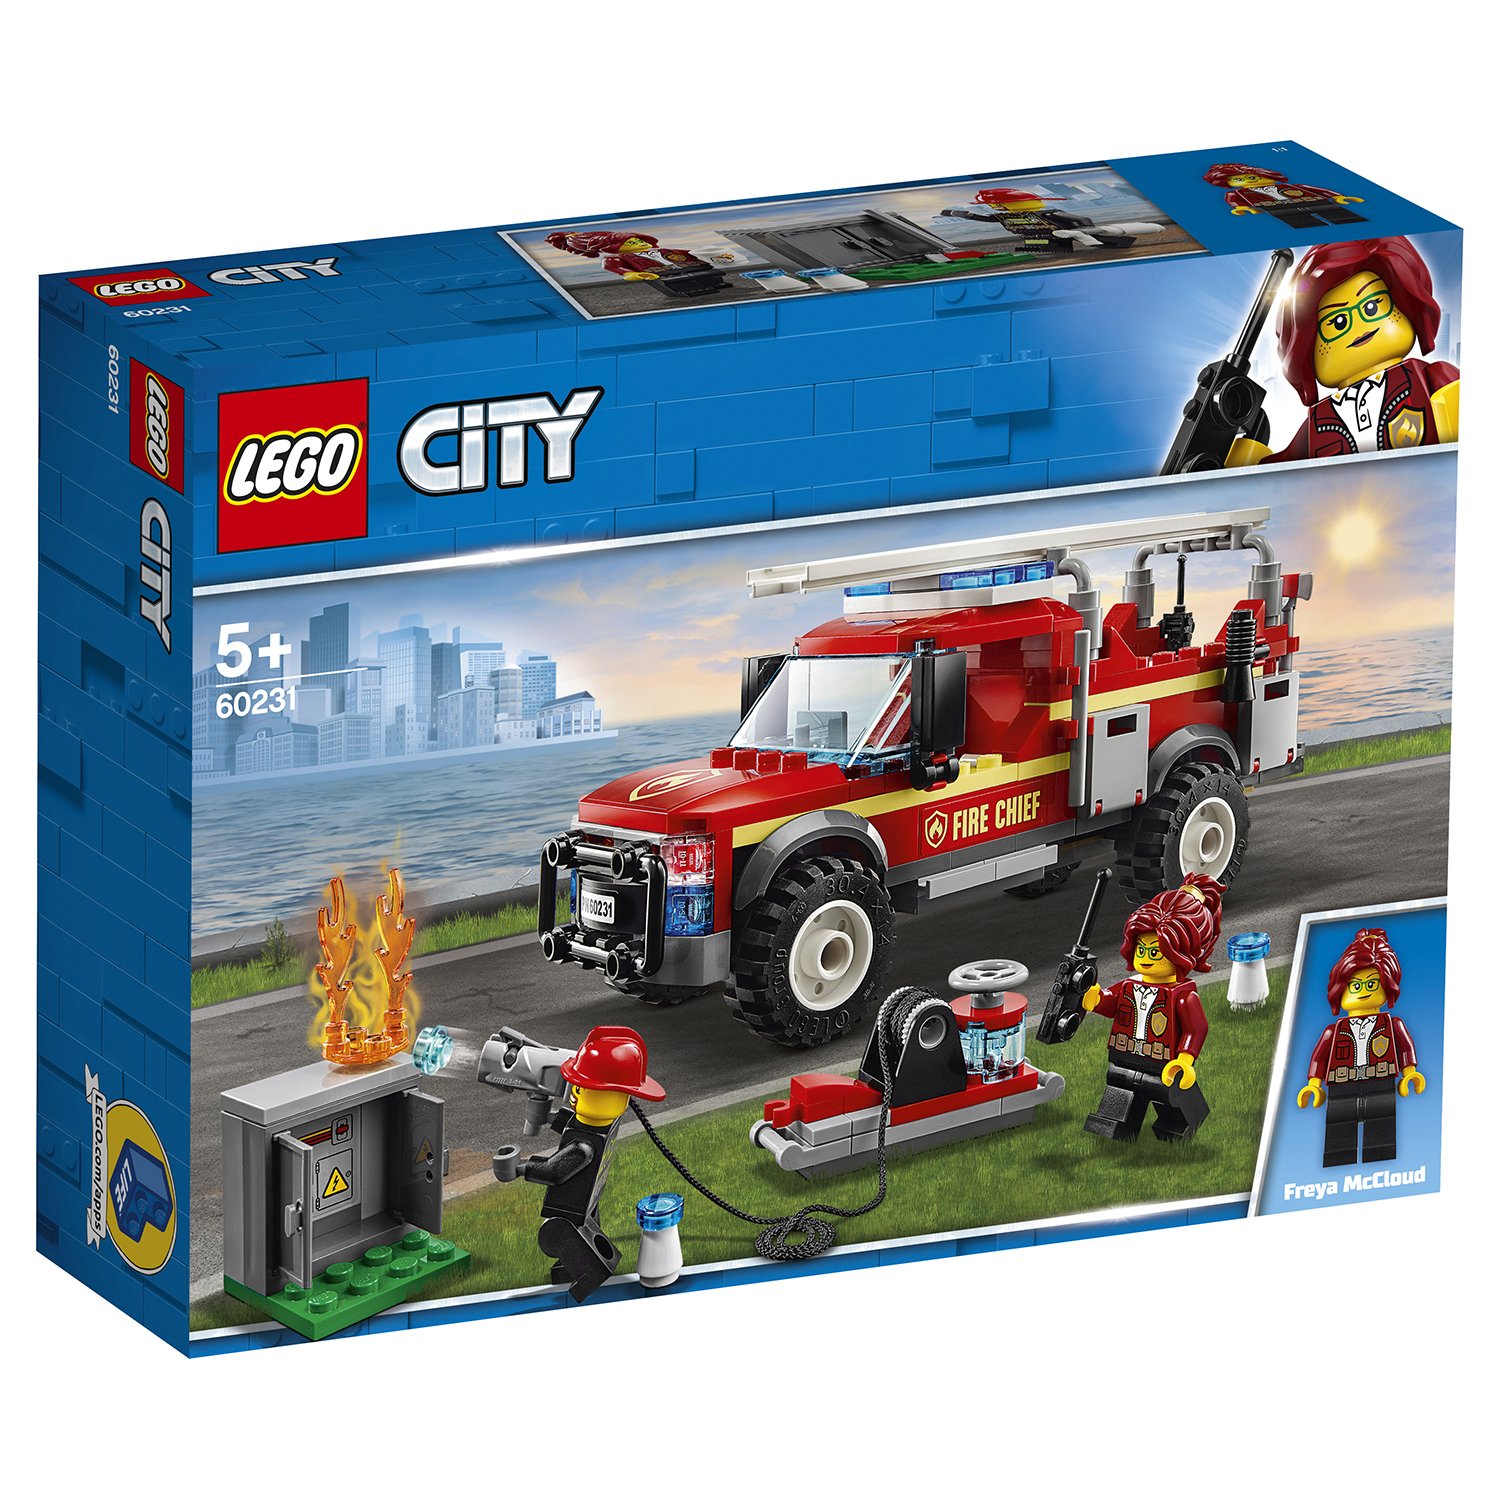 Lego City 60231 Грузовик начальника пожарной охраны